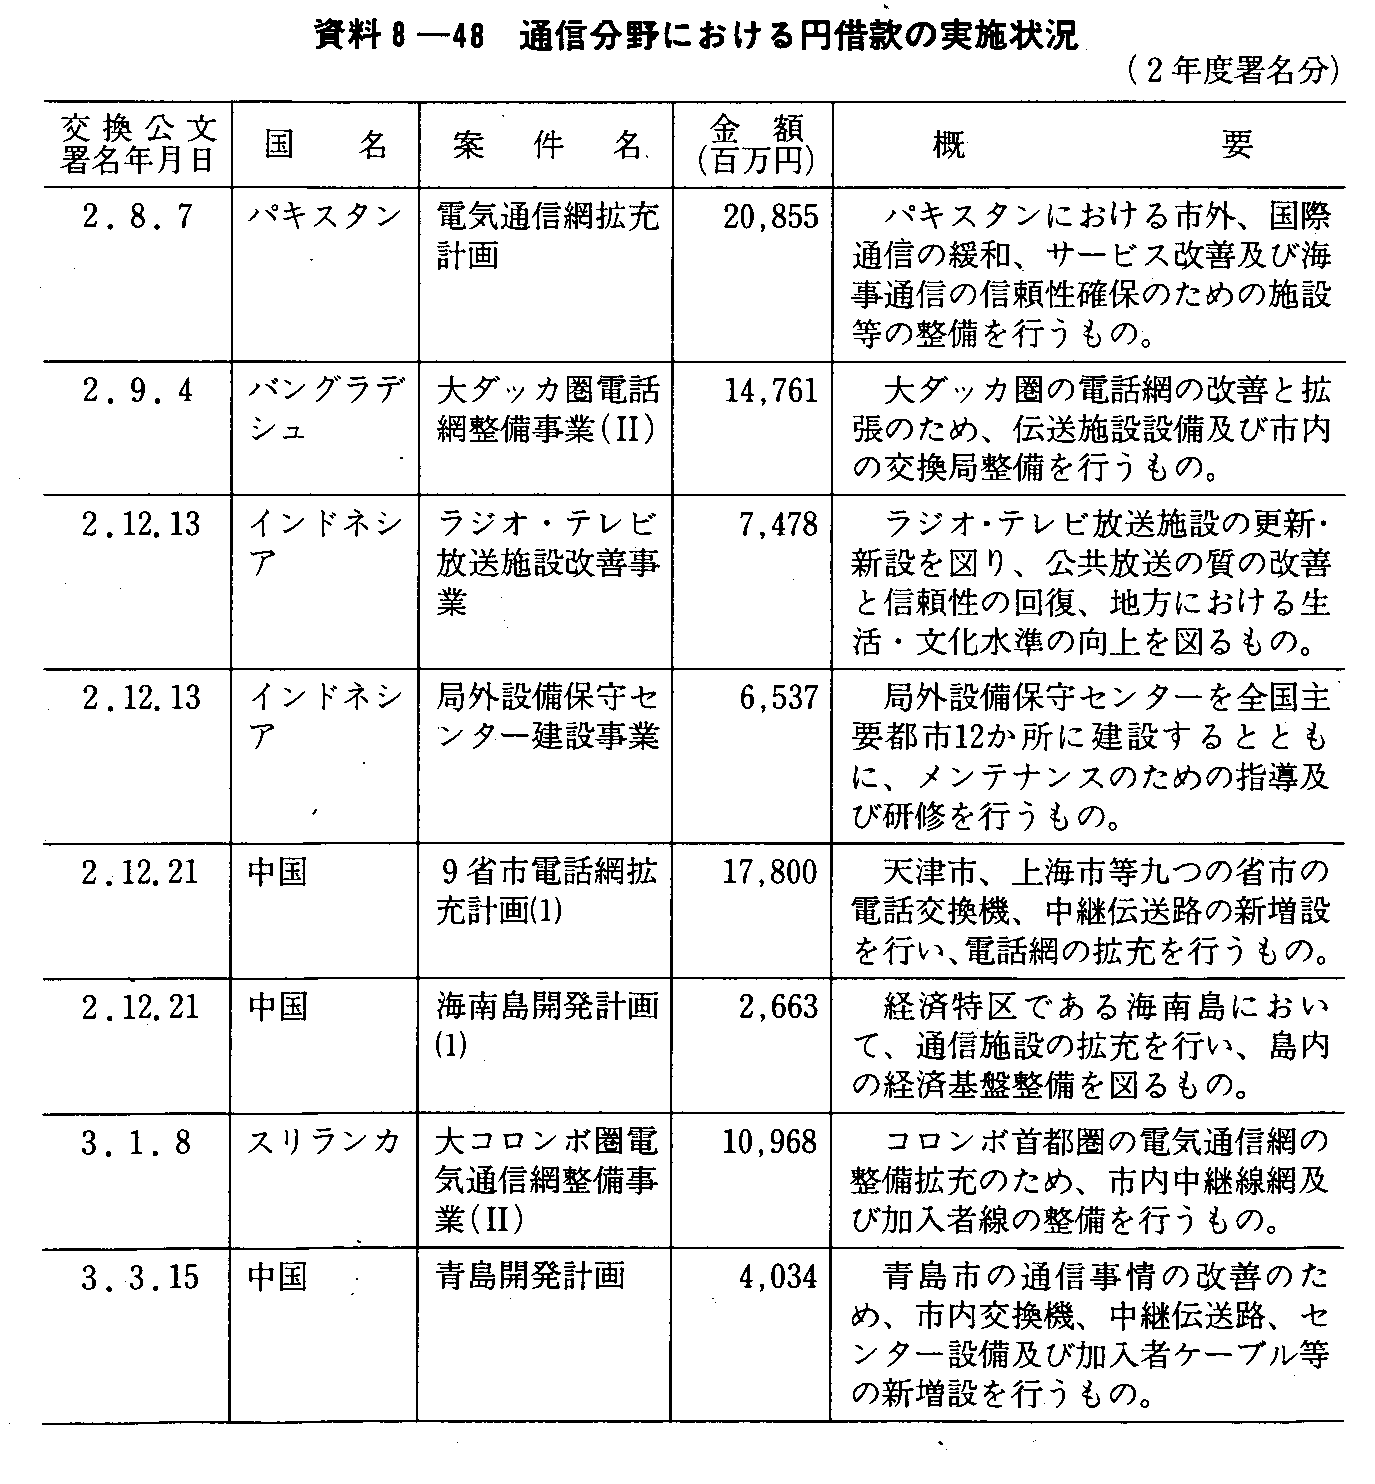 資料8-48 通信分野における円借款の実施状況(2年度署名分)